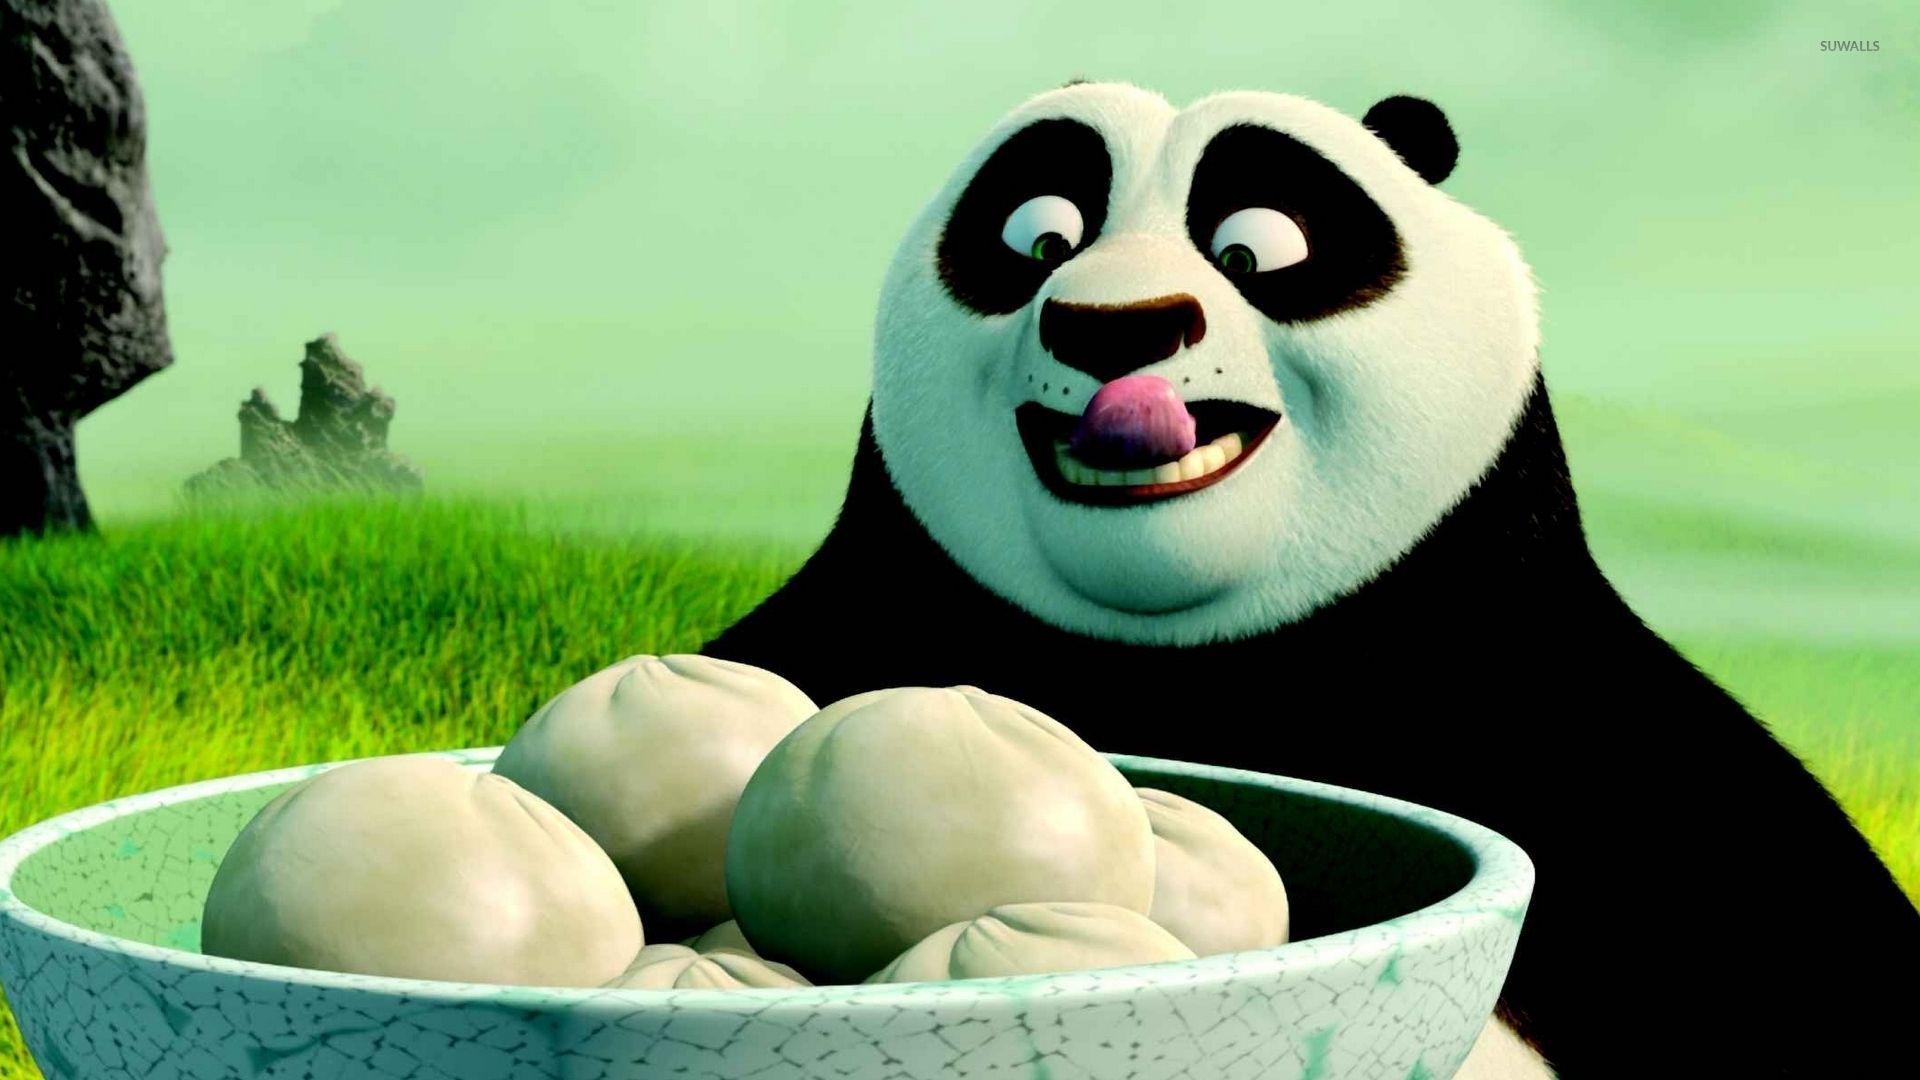 Po having dumplings Fu Panda wallpaper